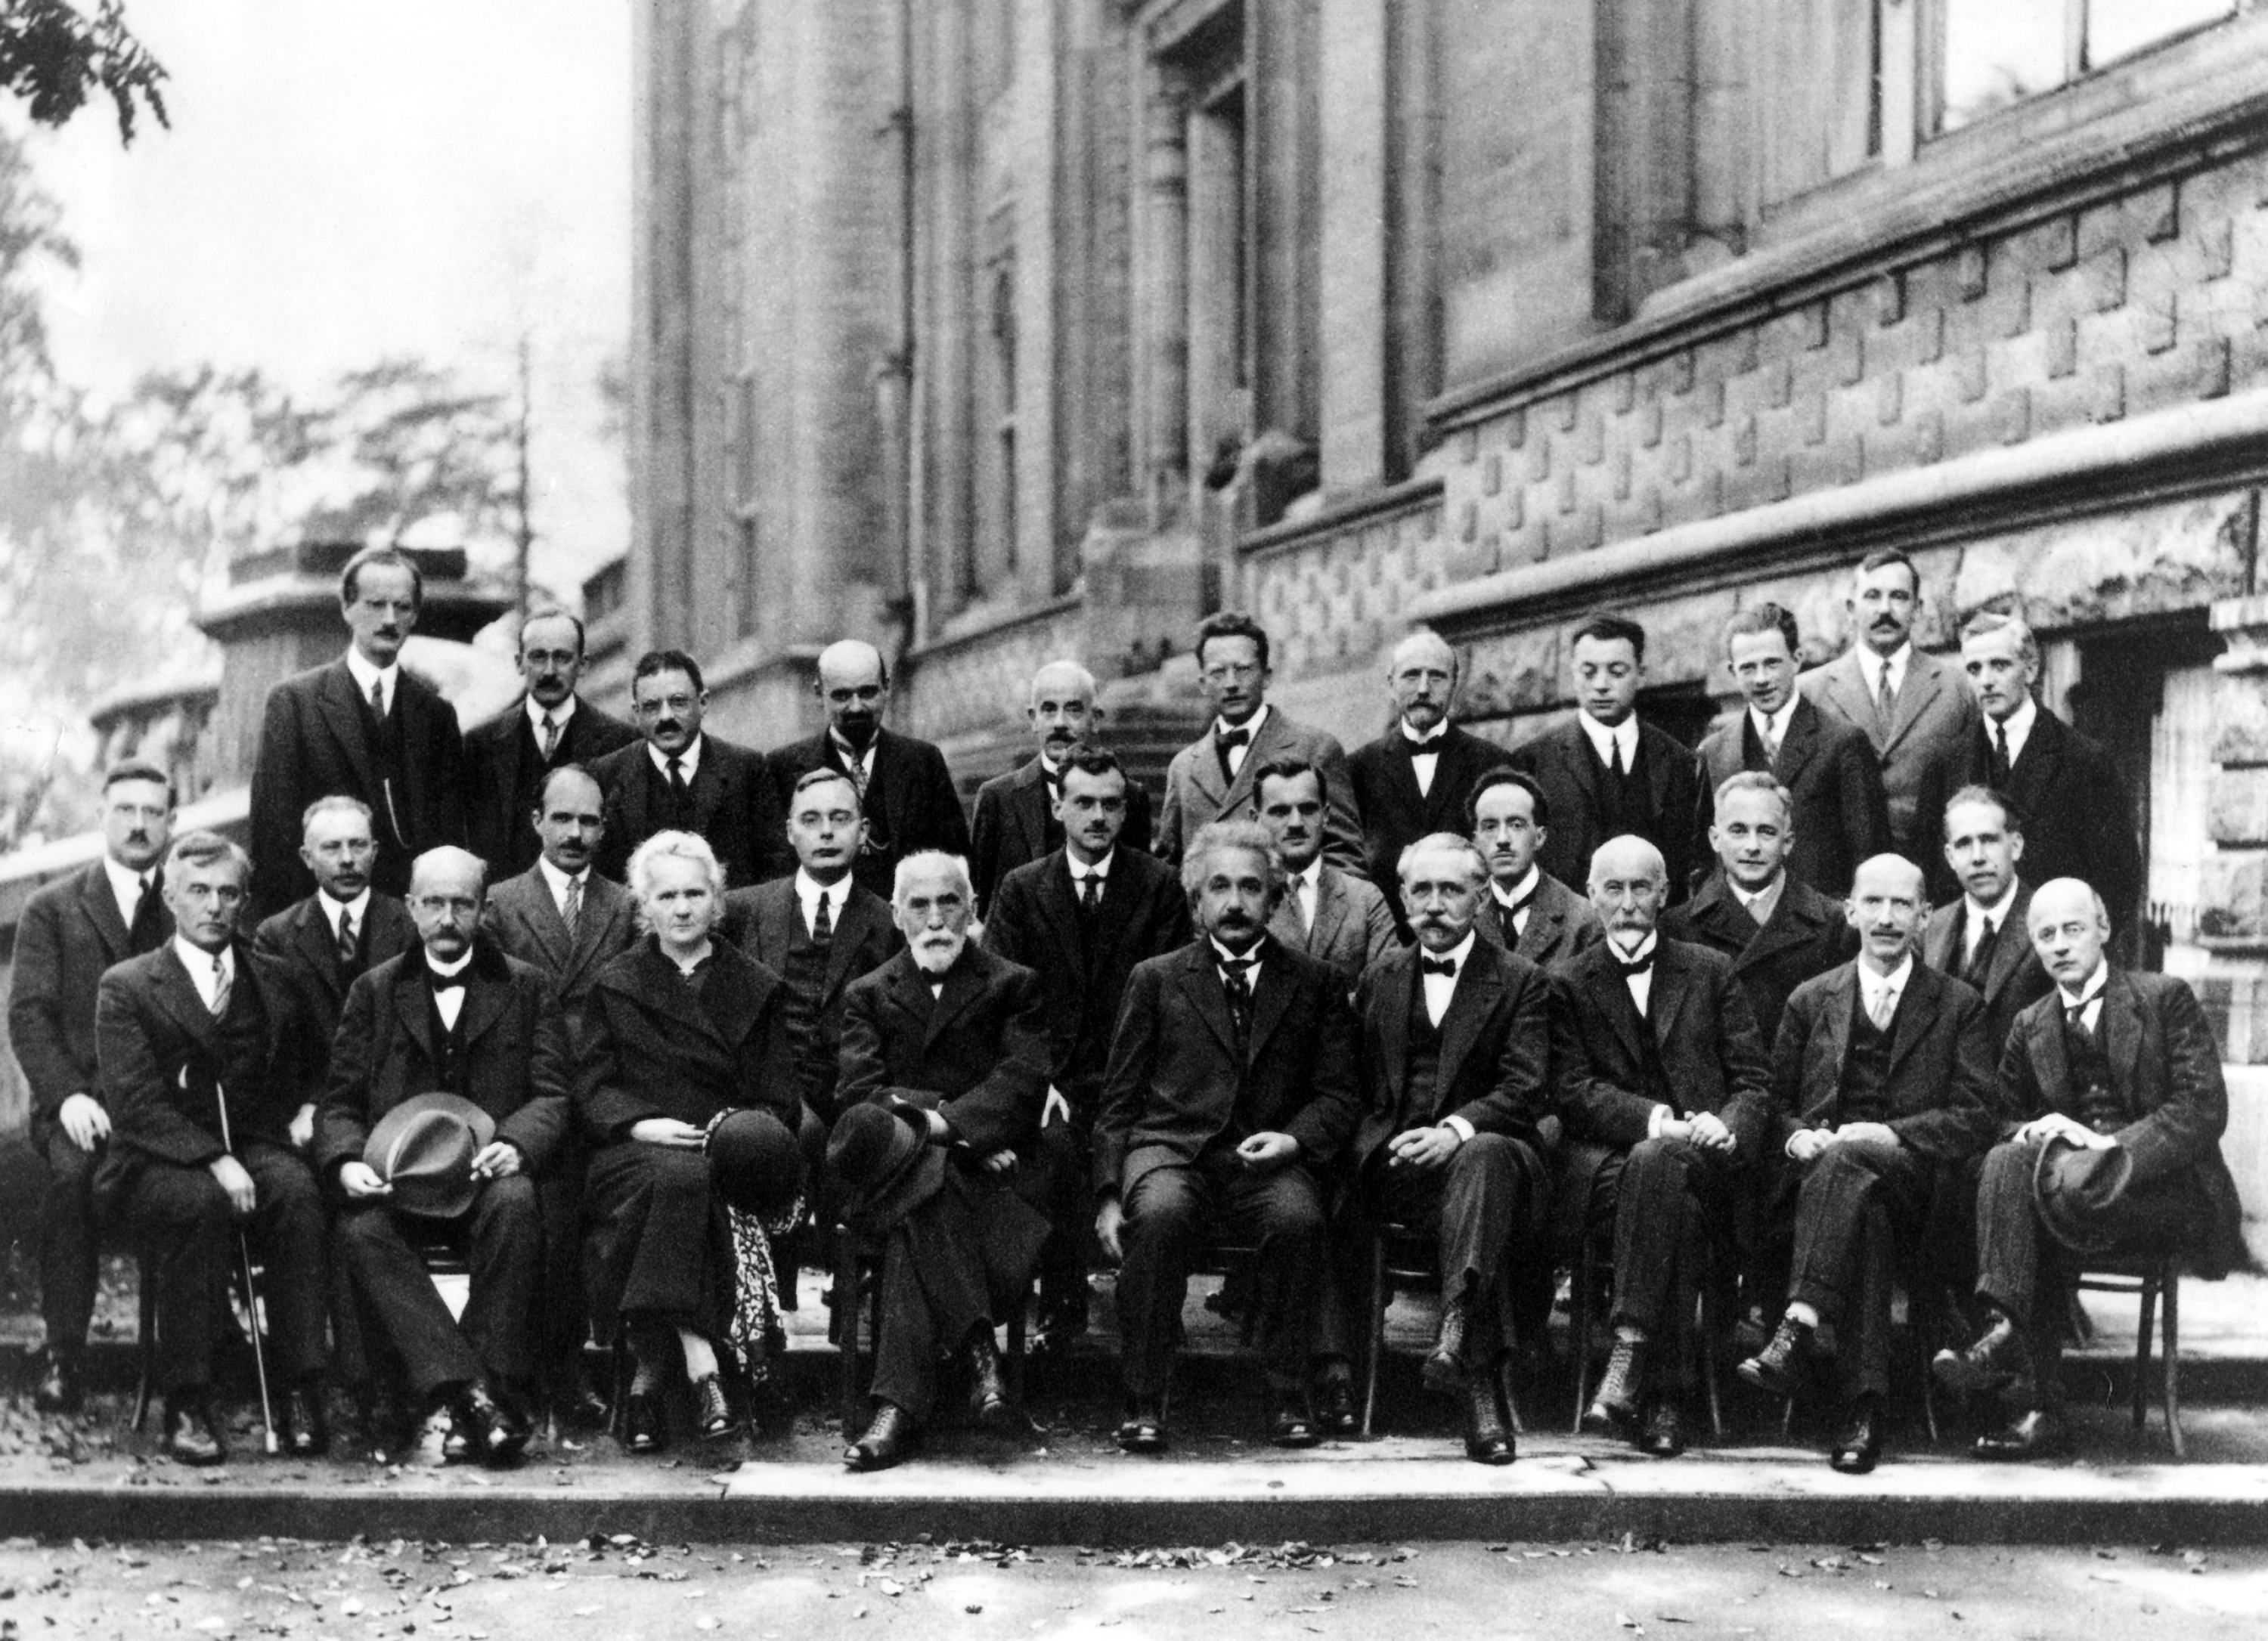 Retrato oficial de la Conferencia de Solvay, 1927, que reunió a los principales científicos involucrados en la formulación de la Mecánica Cuántica